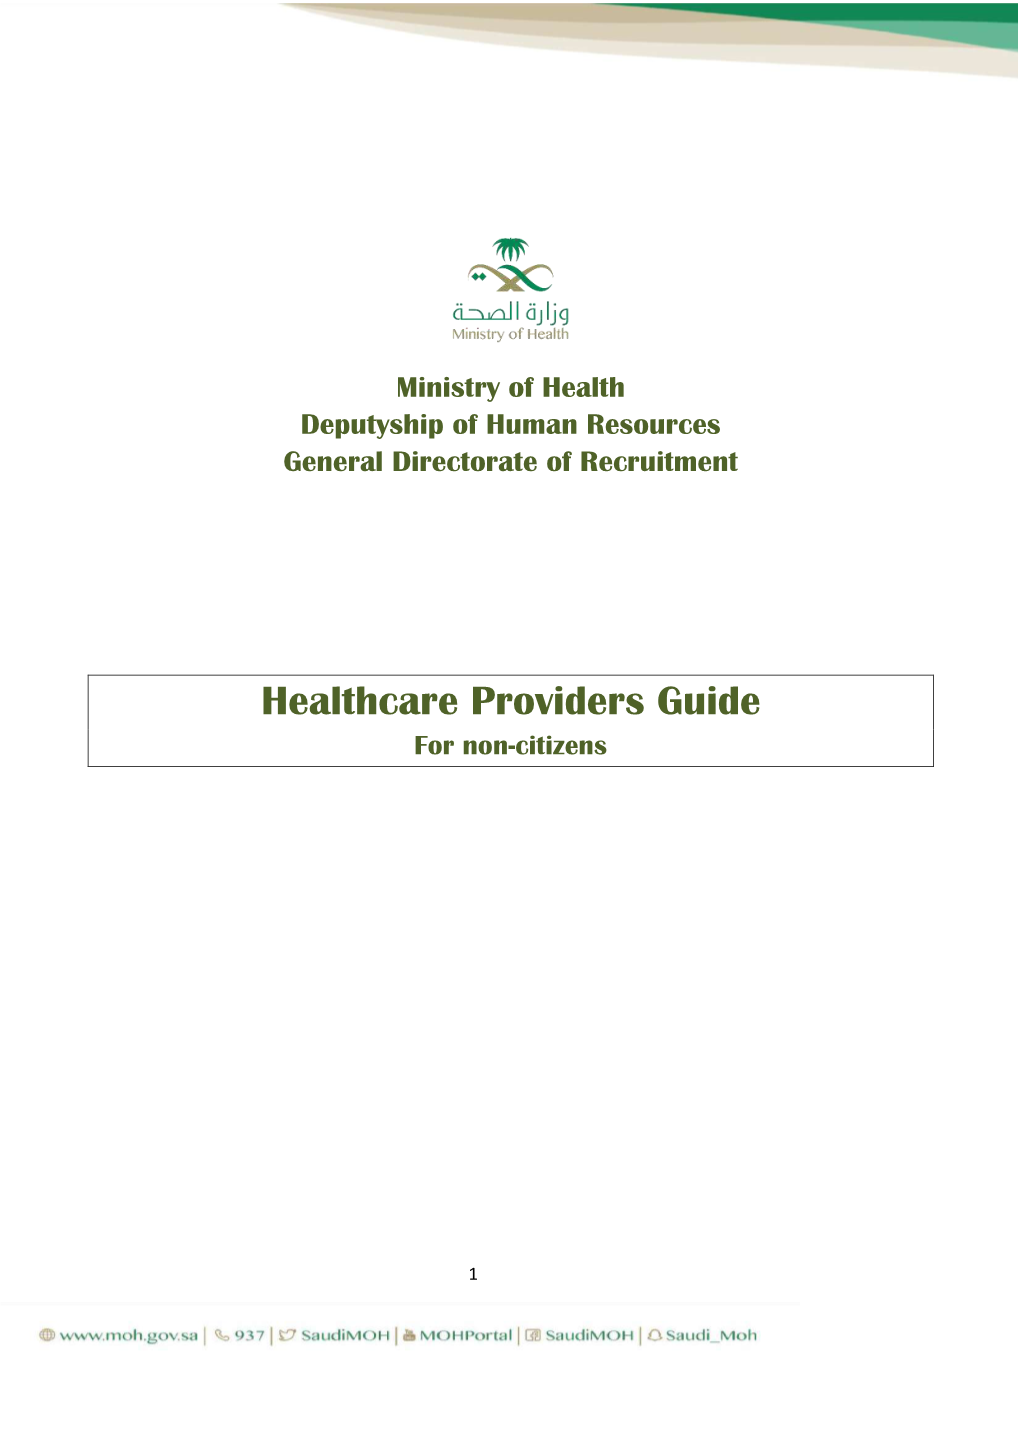 Healthcare Providers Guide for Non-Citizens